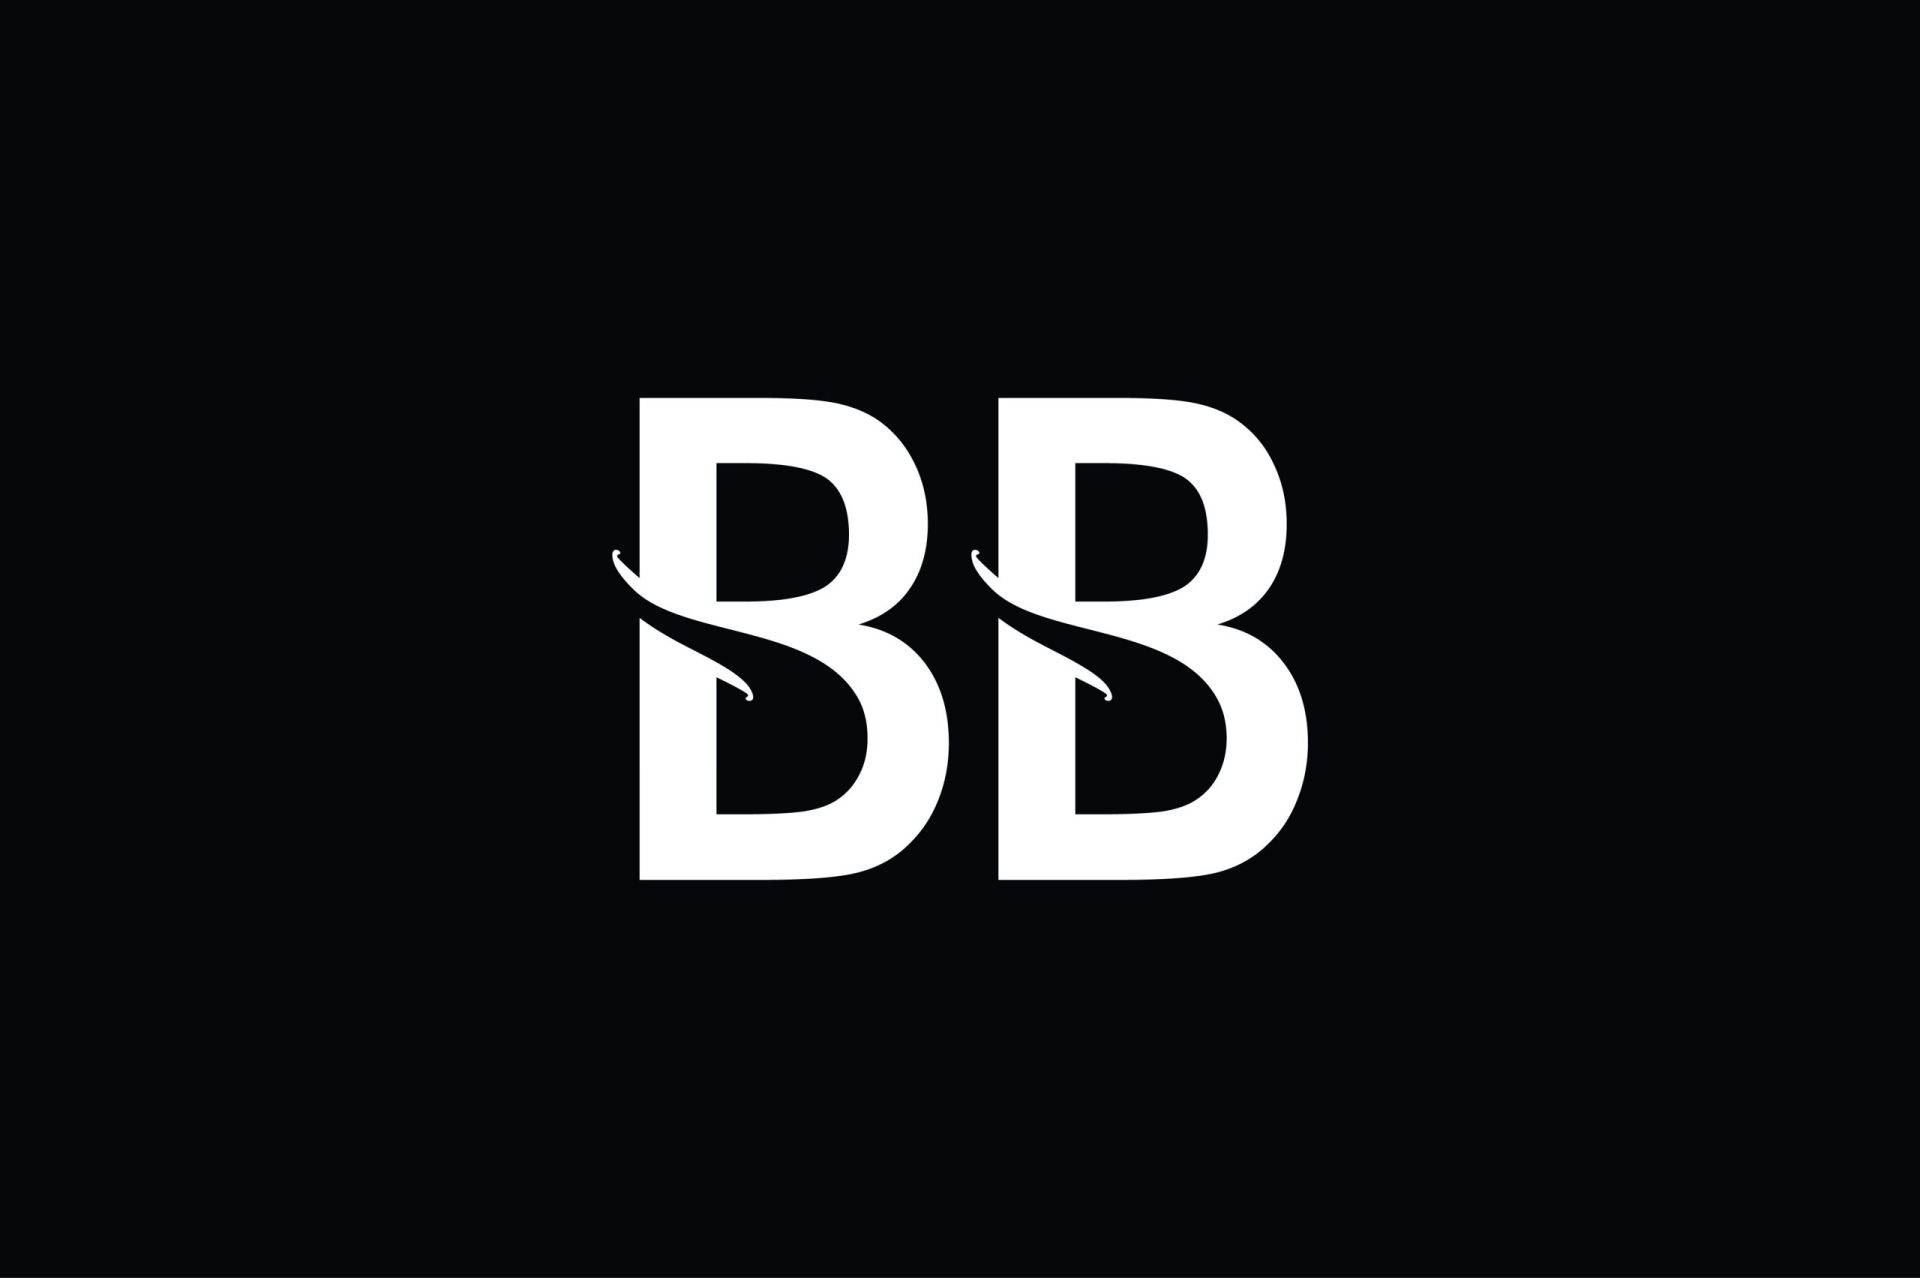 bb logo ideas 3